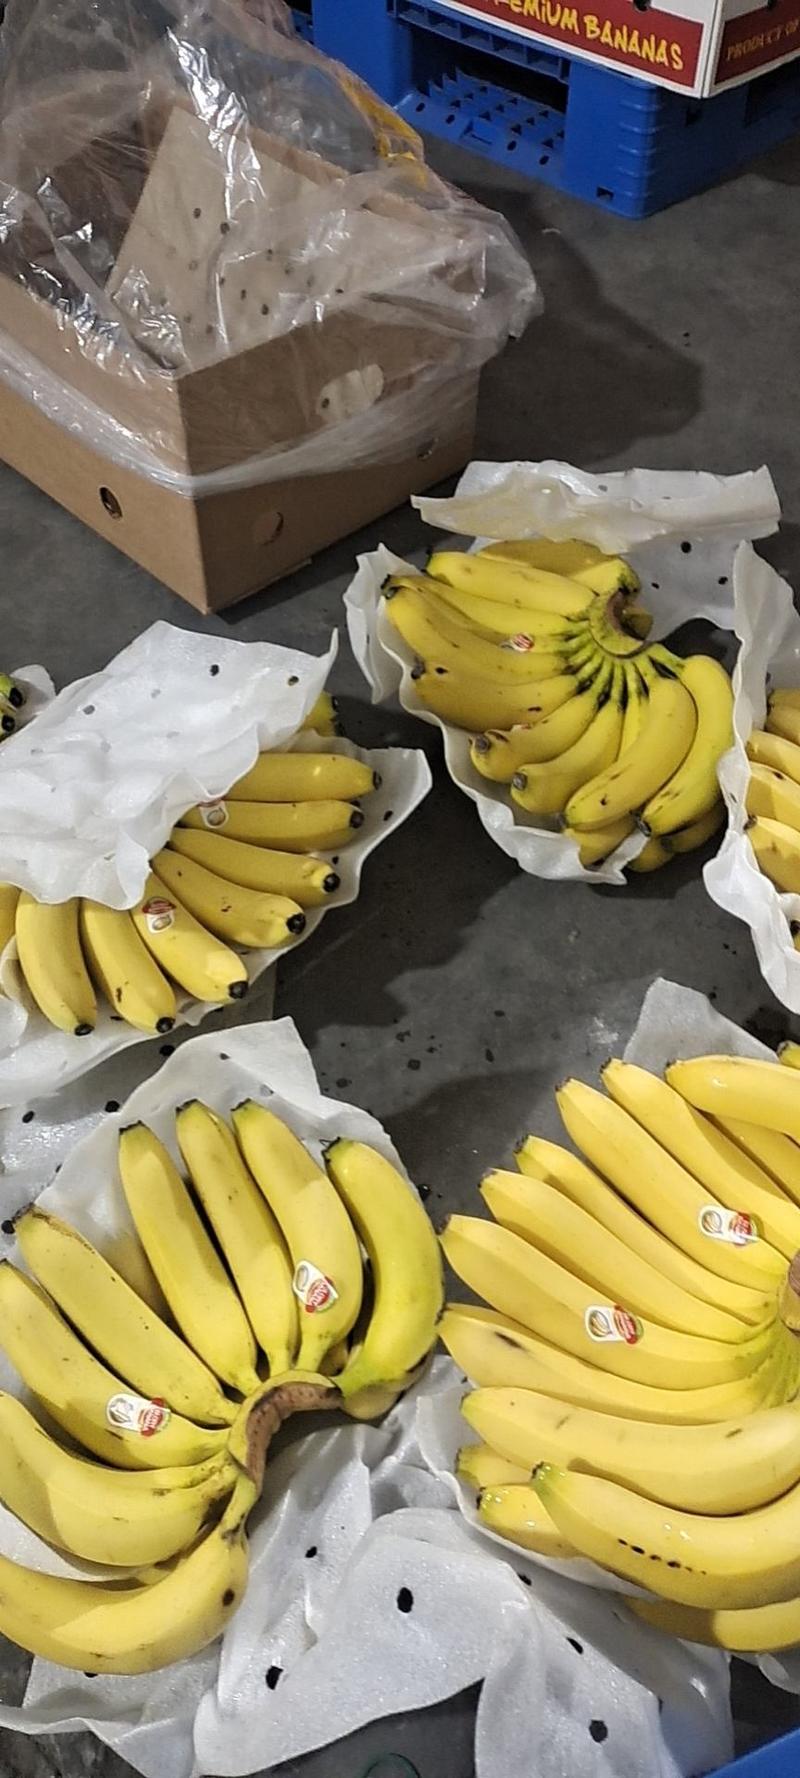 常年供应特价精品菲律宾进口香蕉30斤一箱只要19.9